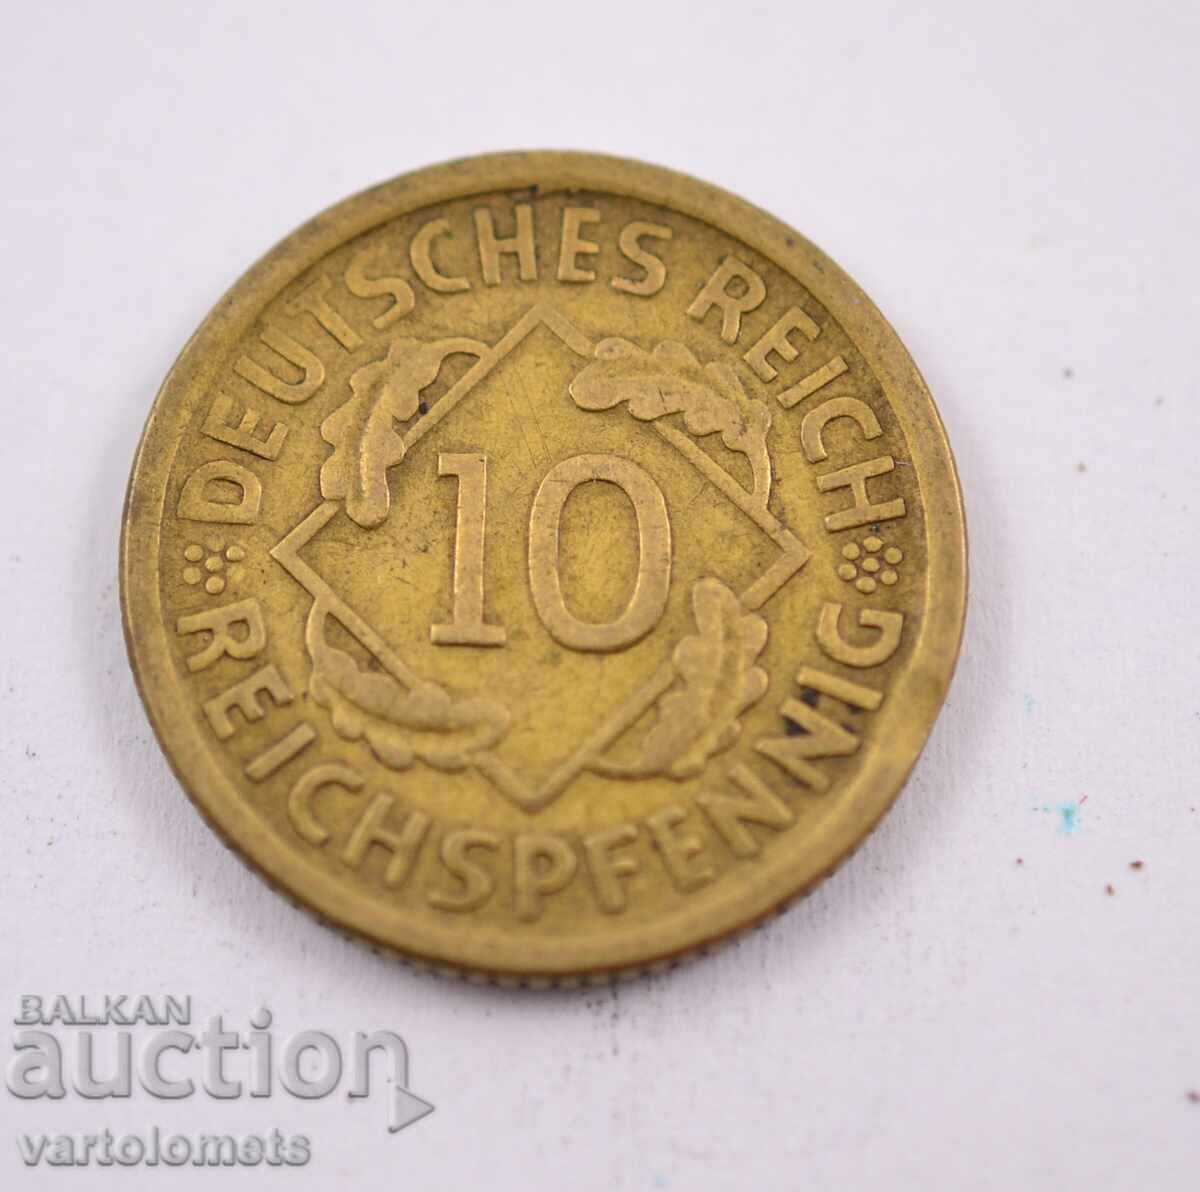 10 Rent Pfennig 1925 - Germany